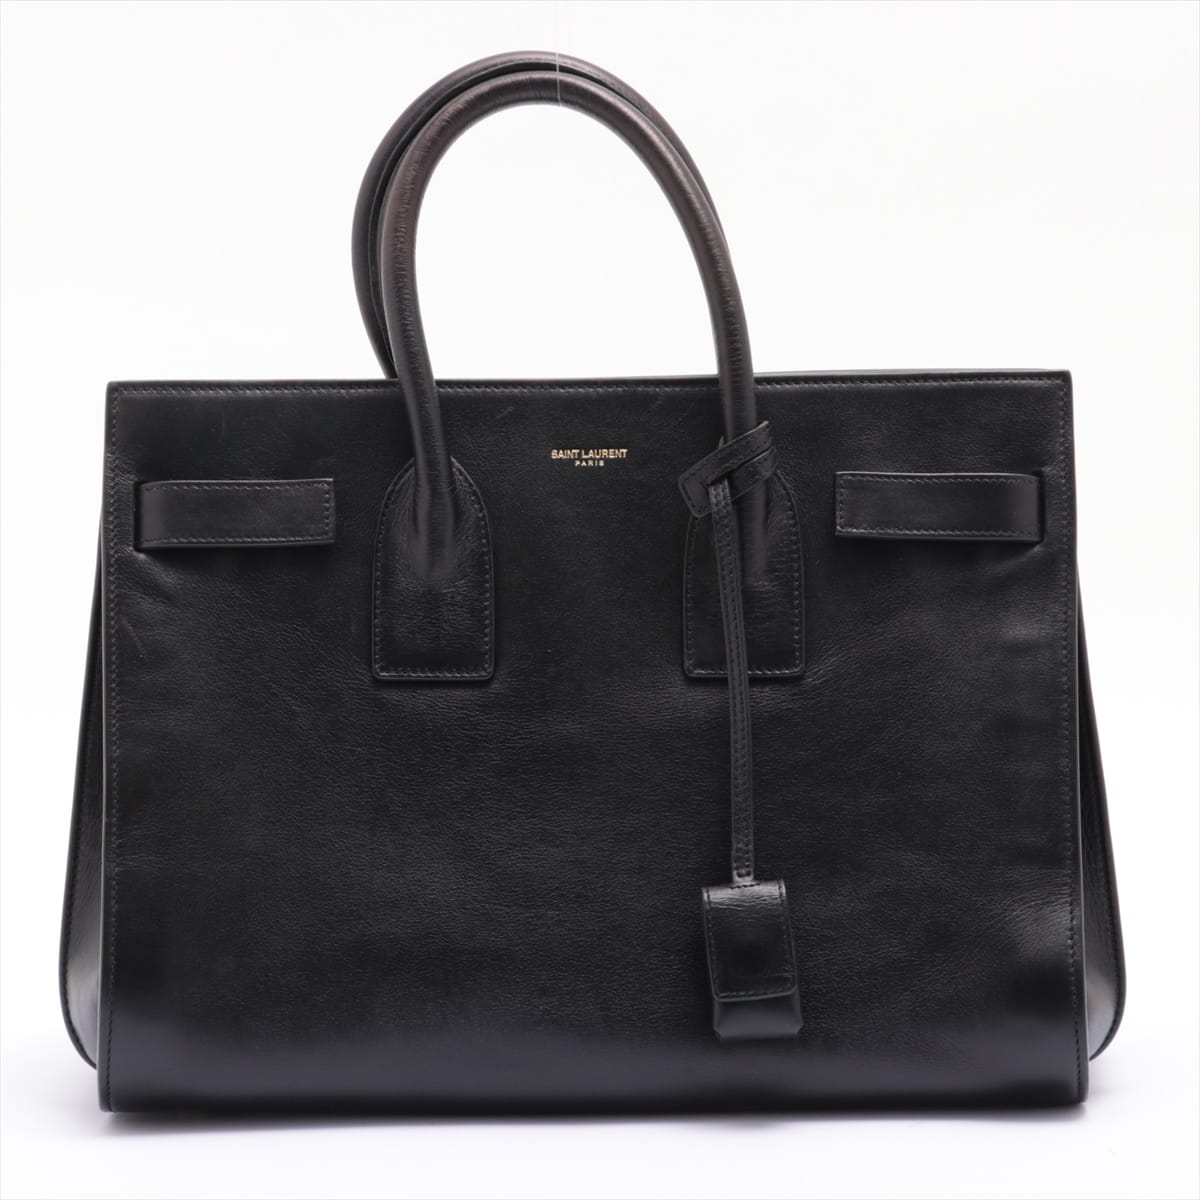 Saint Laurent Paris Sac de Jour Leather 2way handbag Black 324823